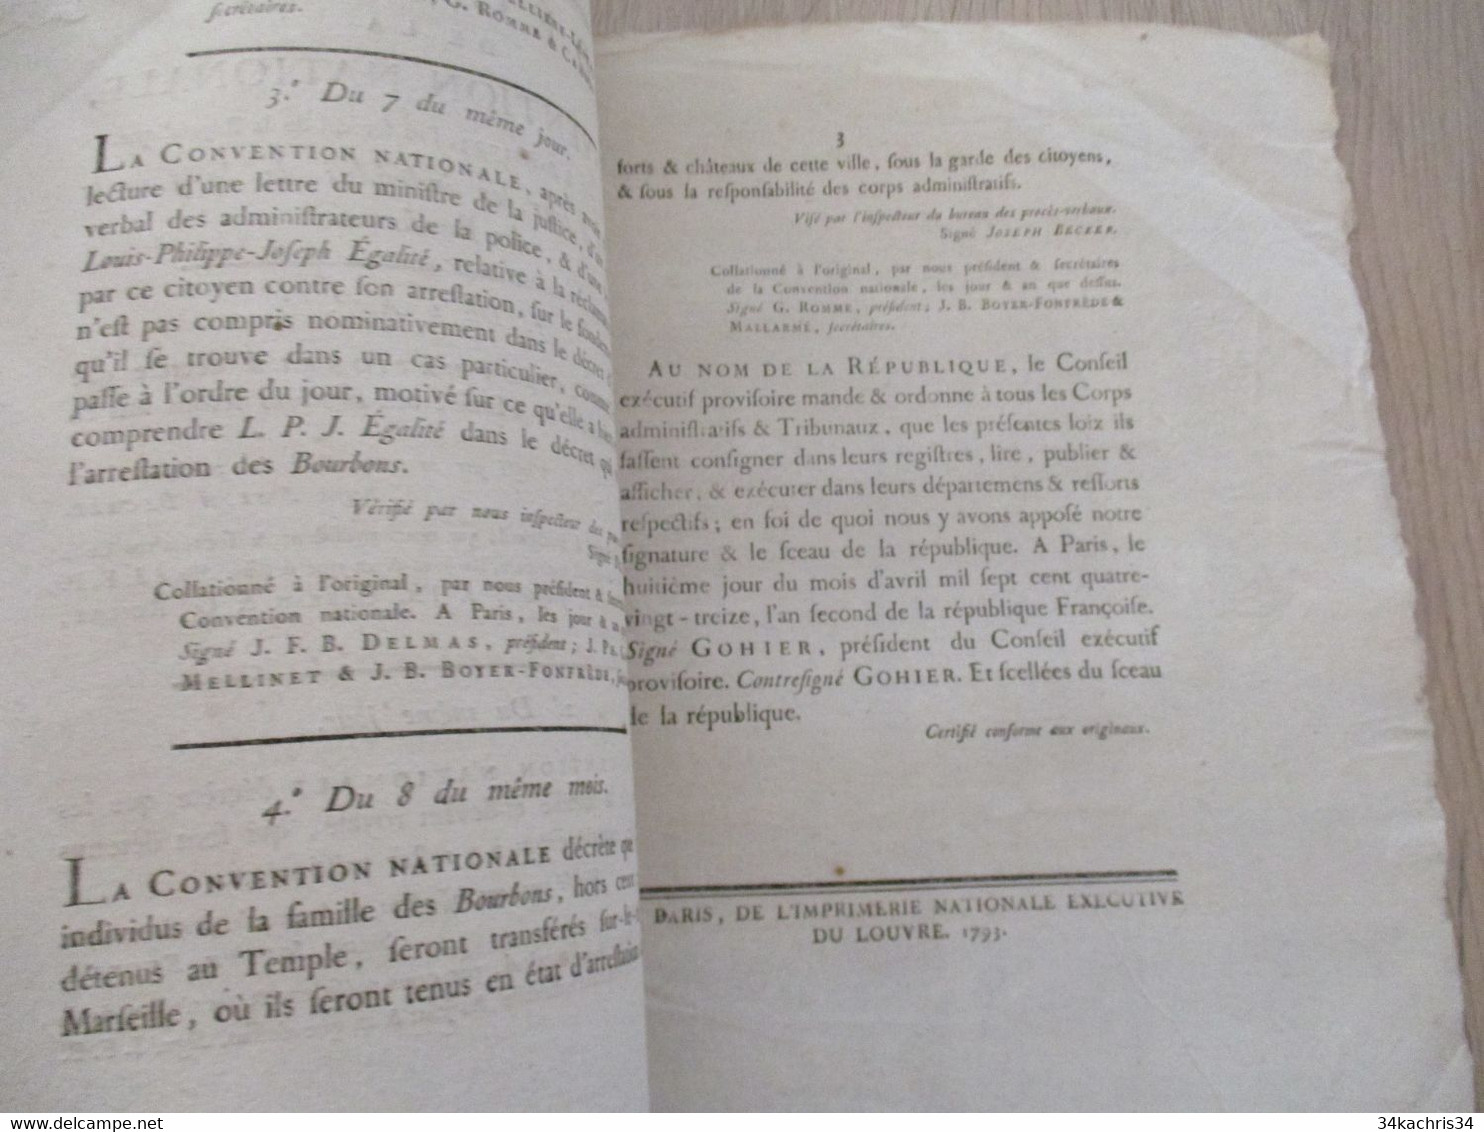 Décret De La Convention Nationale 1793 Révolution Relatifs à Tous Les Individus De La Famille Des Bourbons - Decrees & Laws